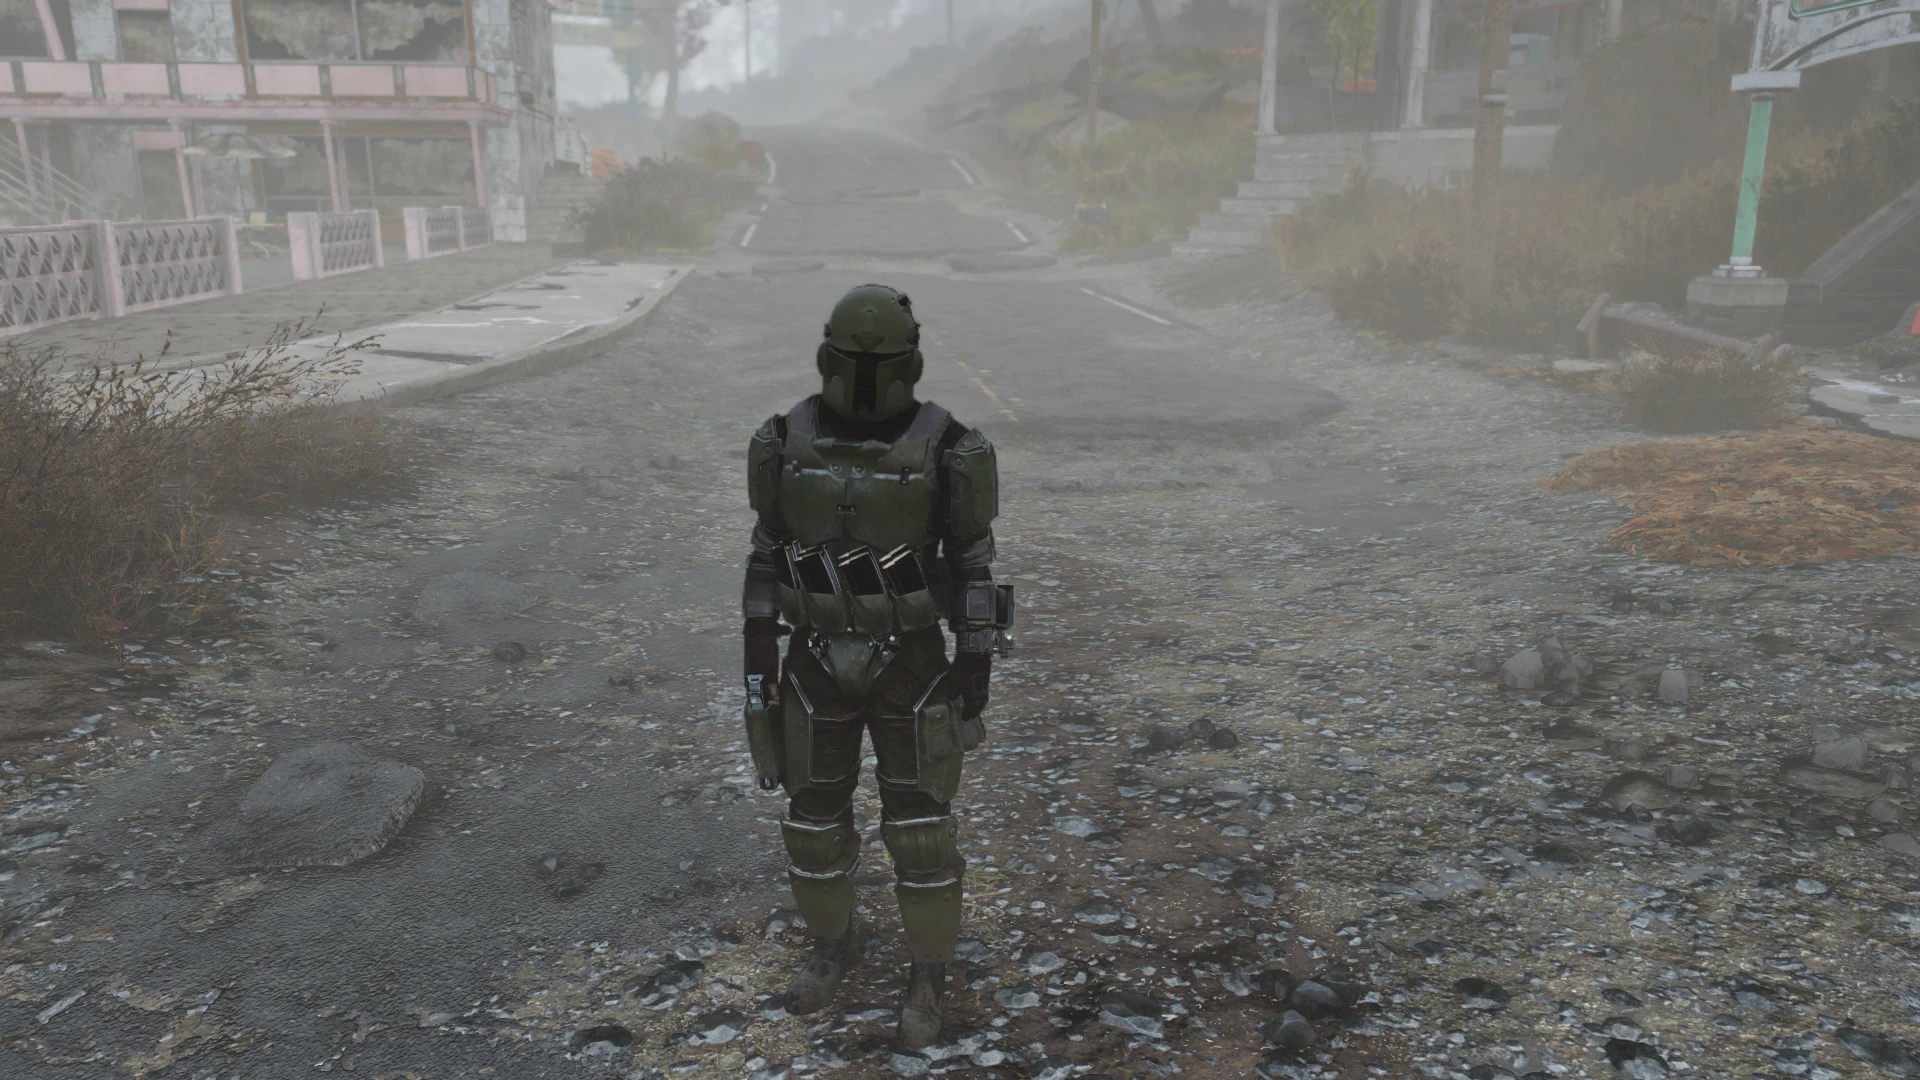 Броня секретной службы. Броня секретной службы Fallout 76. Фоллаут 76 броня секретной службы. Fallout 4 Galac tac. Fallout 4 Galac tac Armor.